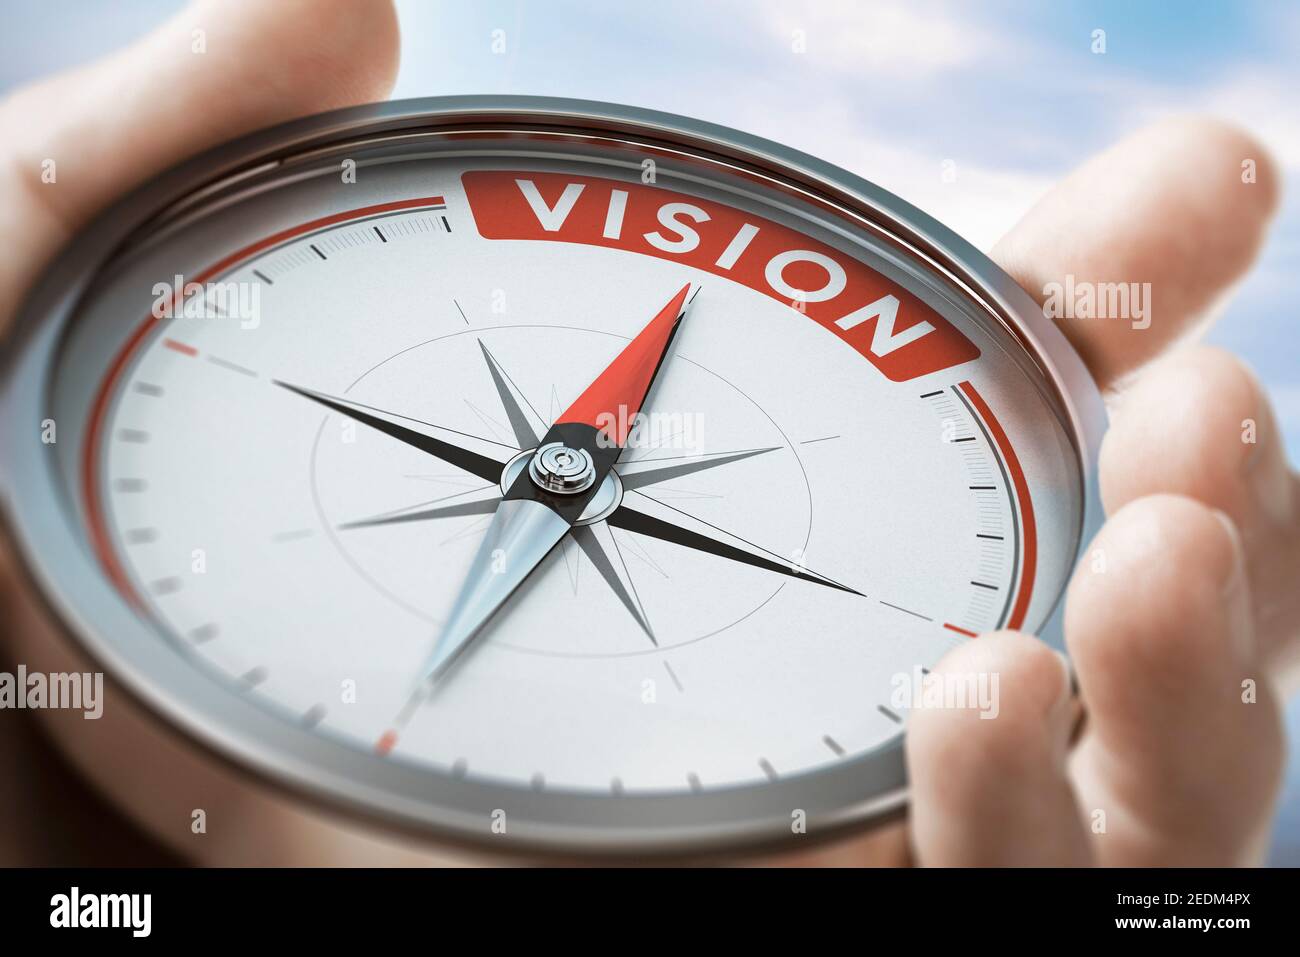 Hand hält einen Kompass mit Nadel zeigt das Wort Vision. Werte der Unternehmens- oder Unternehmensaussage. Zusammengesetztes Bild zwischen einer Hand Fotografie und Stockfoto